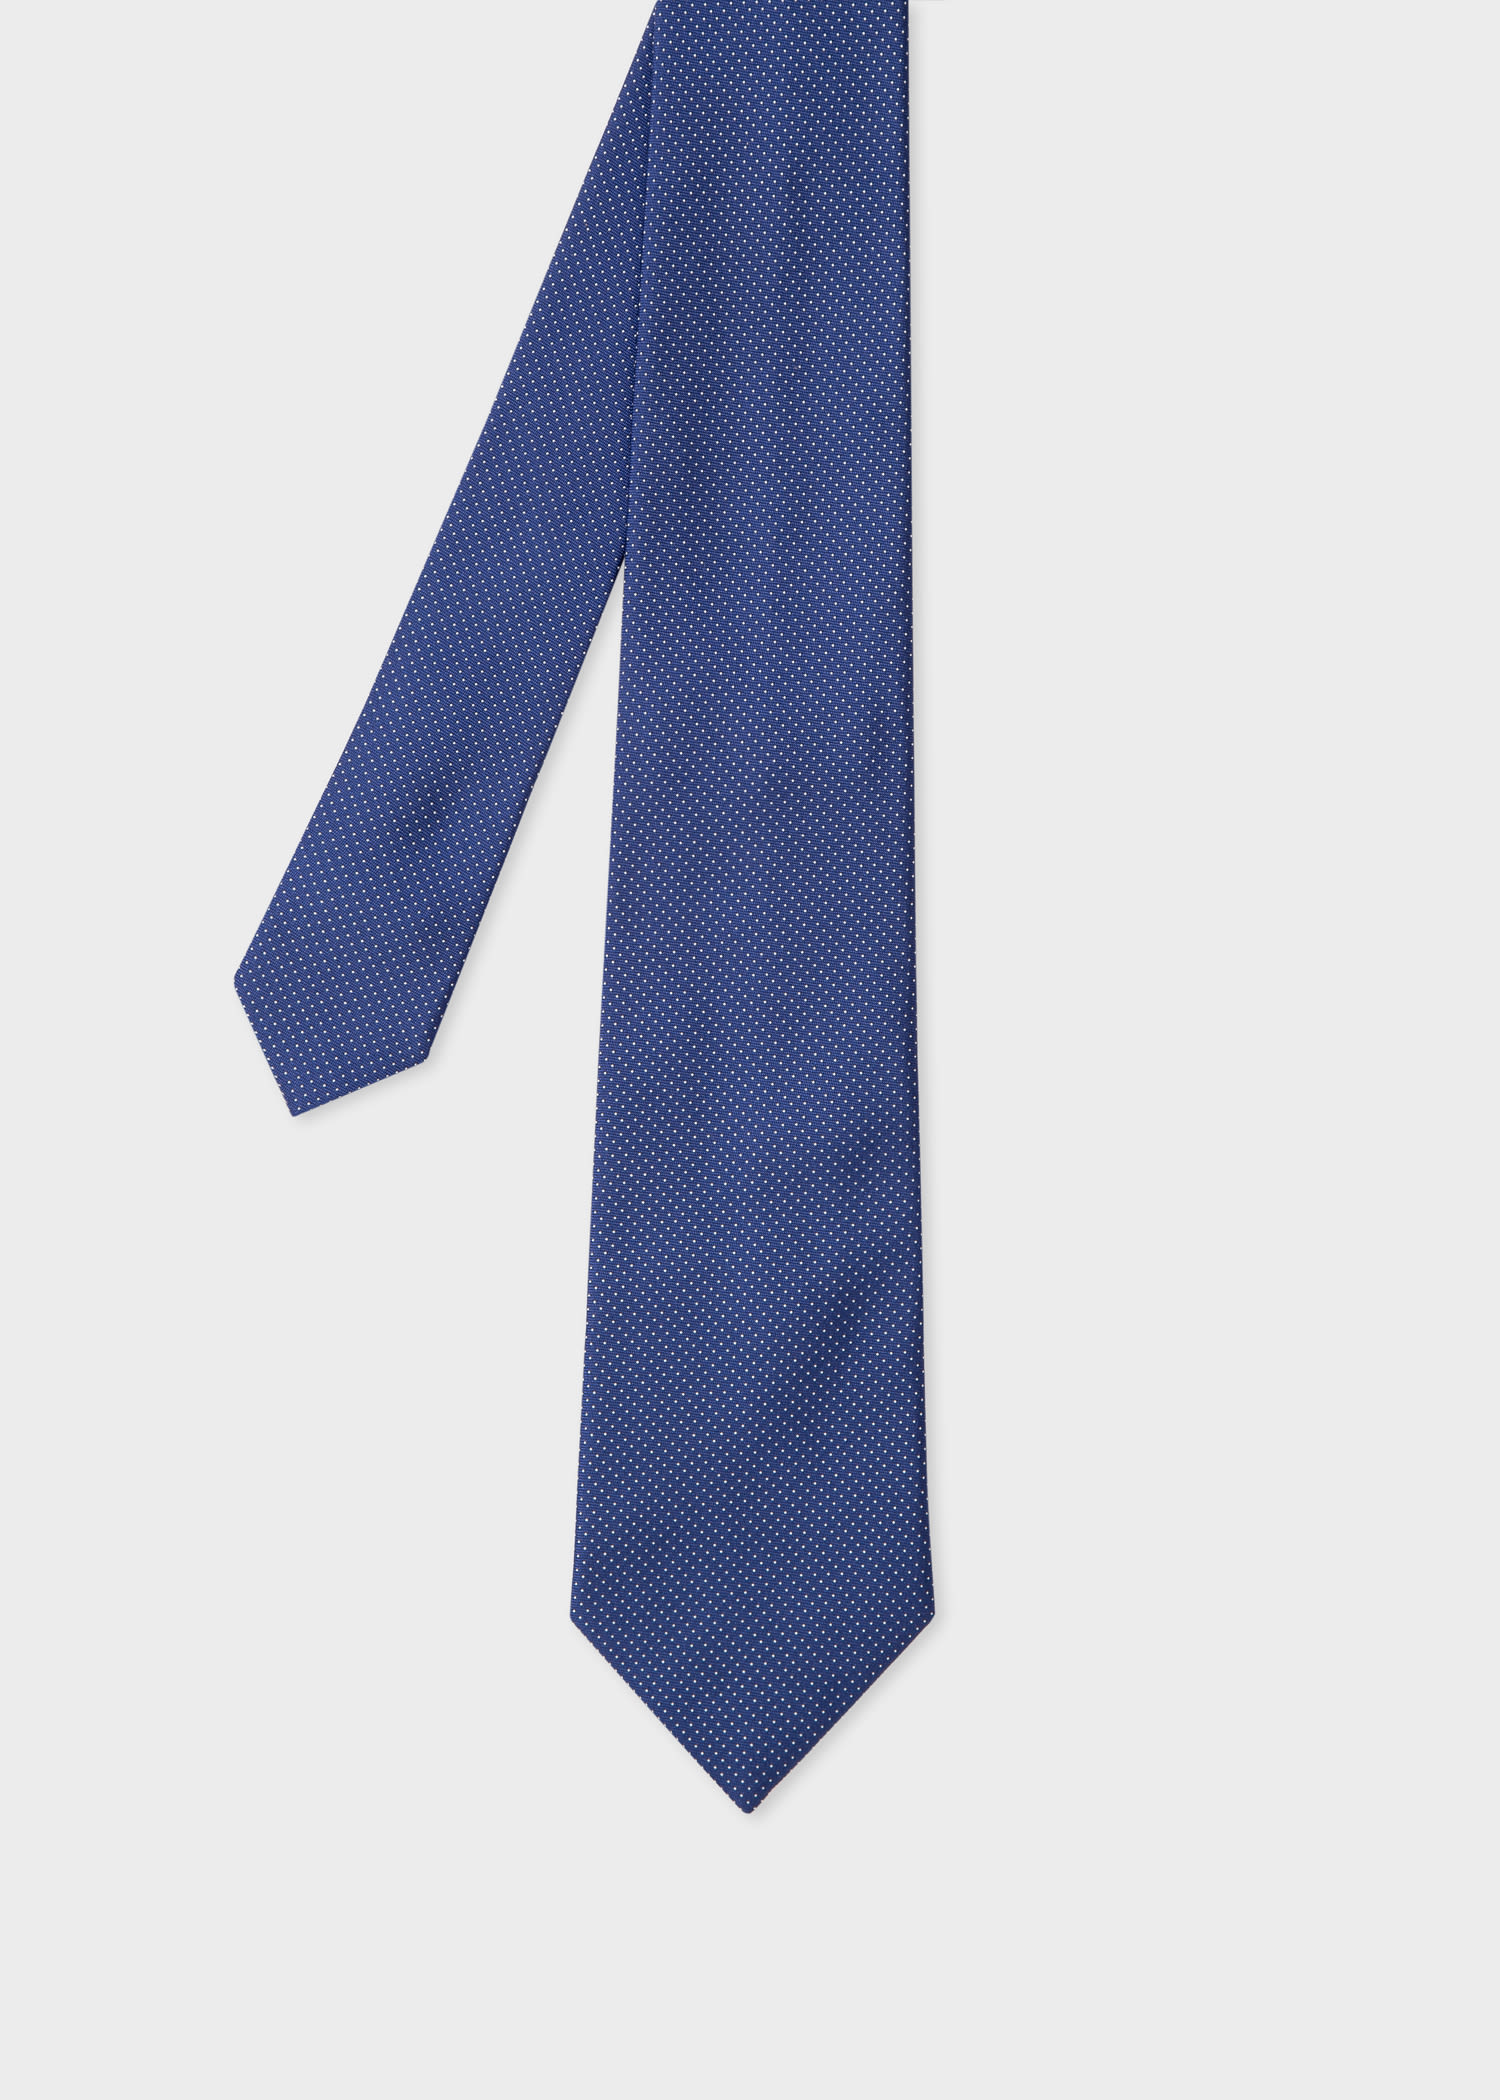 Cravate à rayures Soie Paul Smith pour homme en coloris Bleu Homme Accessoires Cravates 